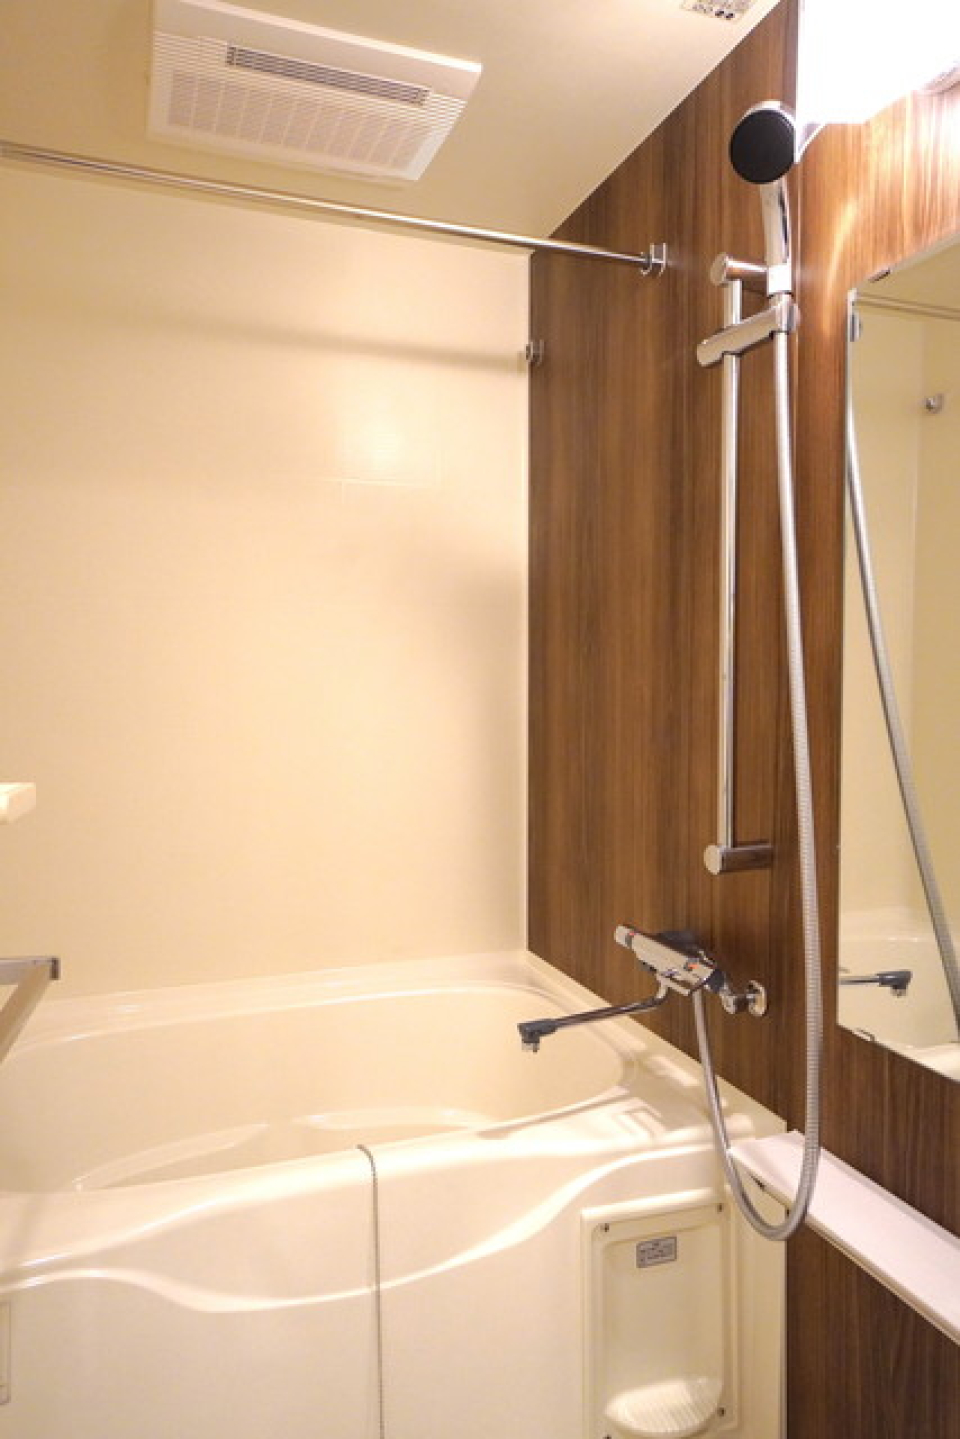 浴室もキッチンパネルと統一感のあるものになっています。※写真は同タイプ住戸です。